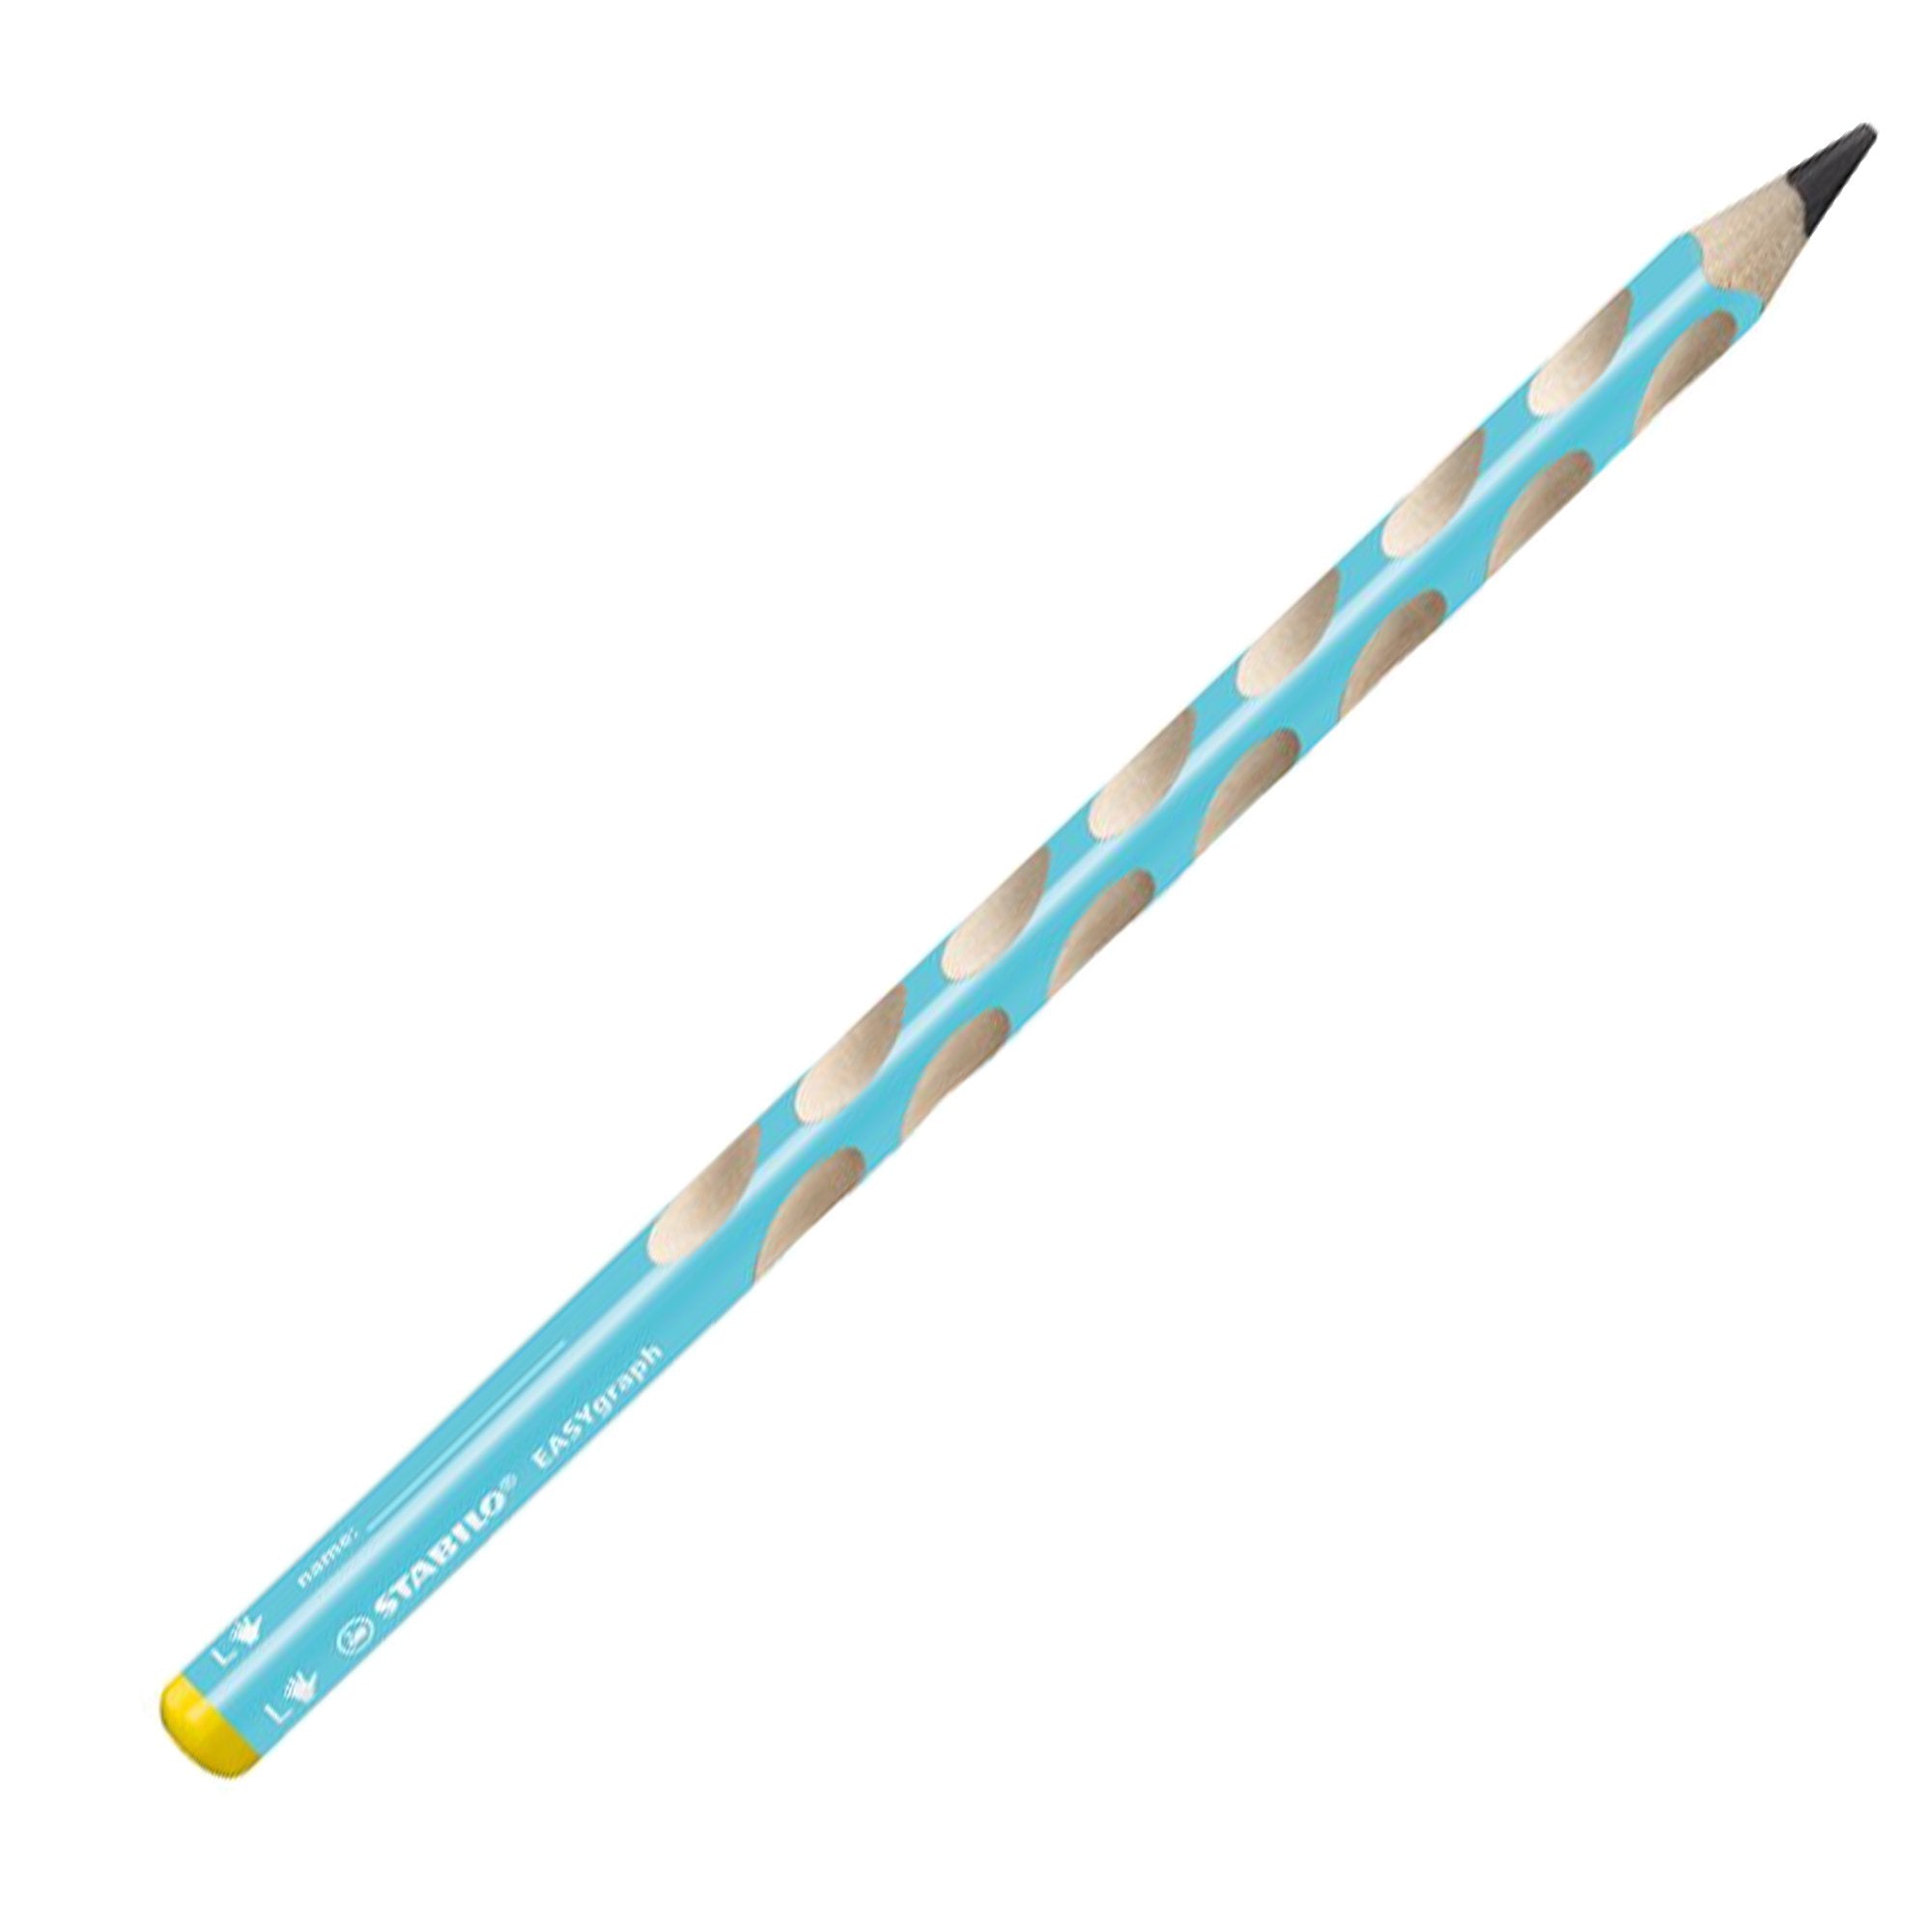 stabilo-astuccio-6-matite-grafite-easygraph-hb-fusto-azzurro-mancini